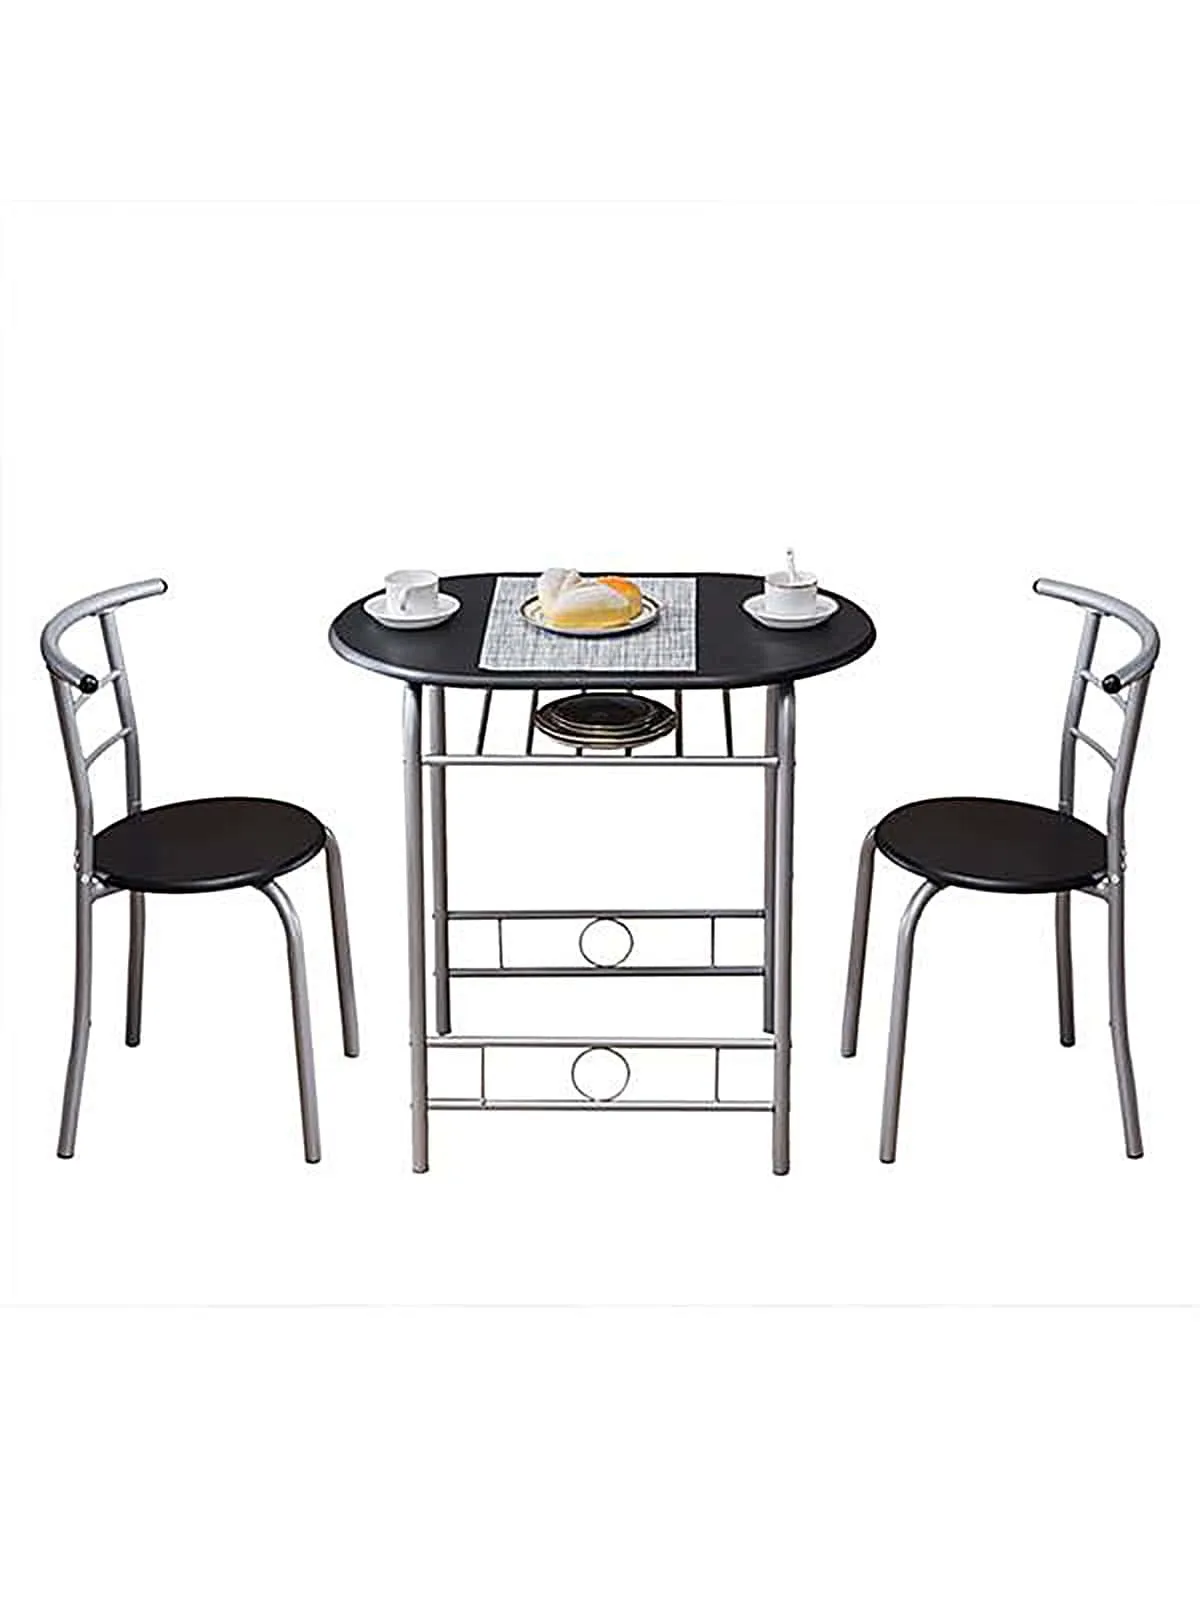 Столик для завтрака из ПВХ (один стол и два стула) Черный обеденный стол, стулья, обеденные столы и набор стульев